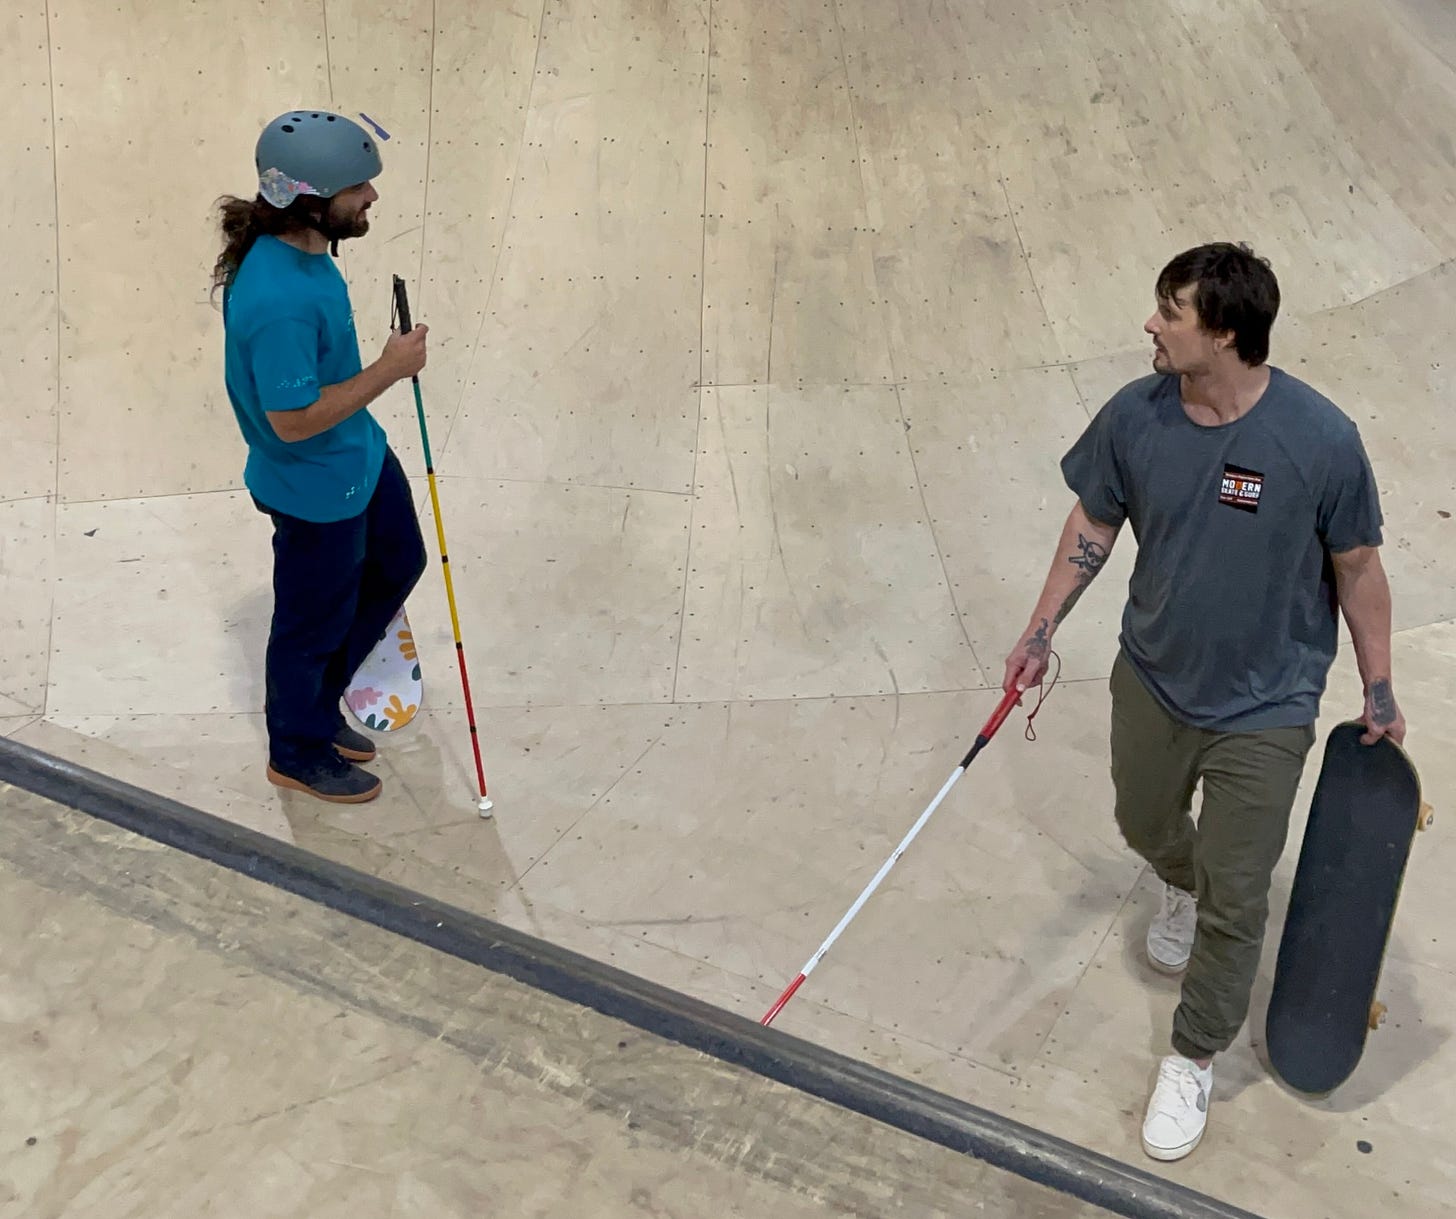 Blind Skater, Anthony Ferraro (left) learns how to navigate the bowl from Blind Skater, Nick Mullins at Modern Skate